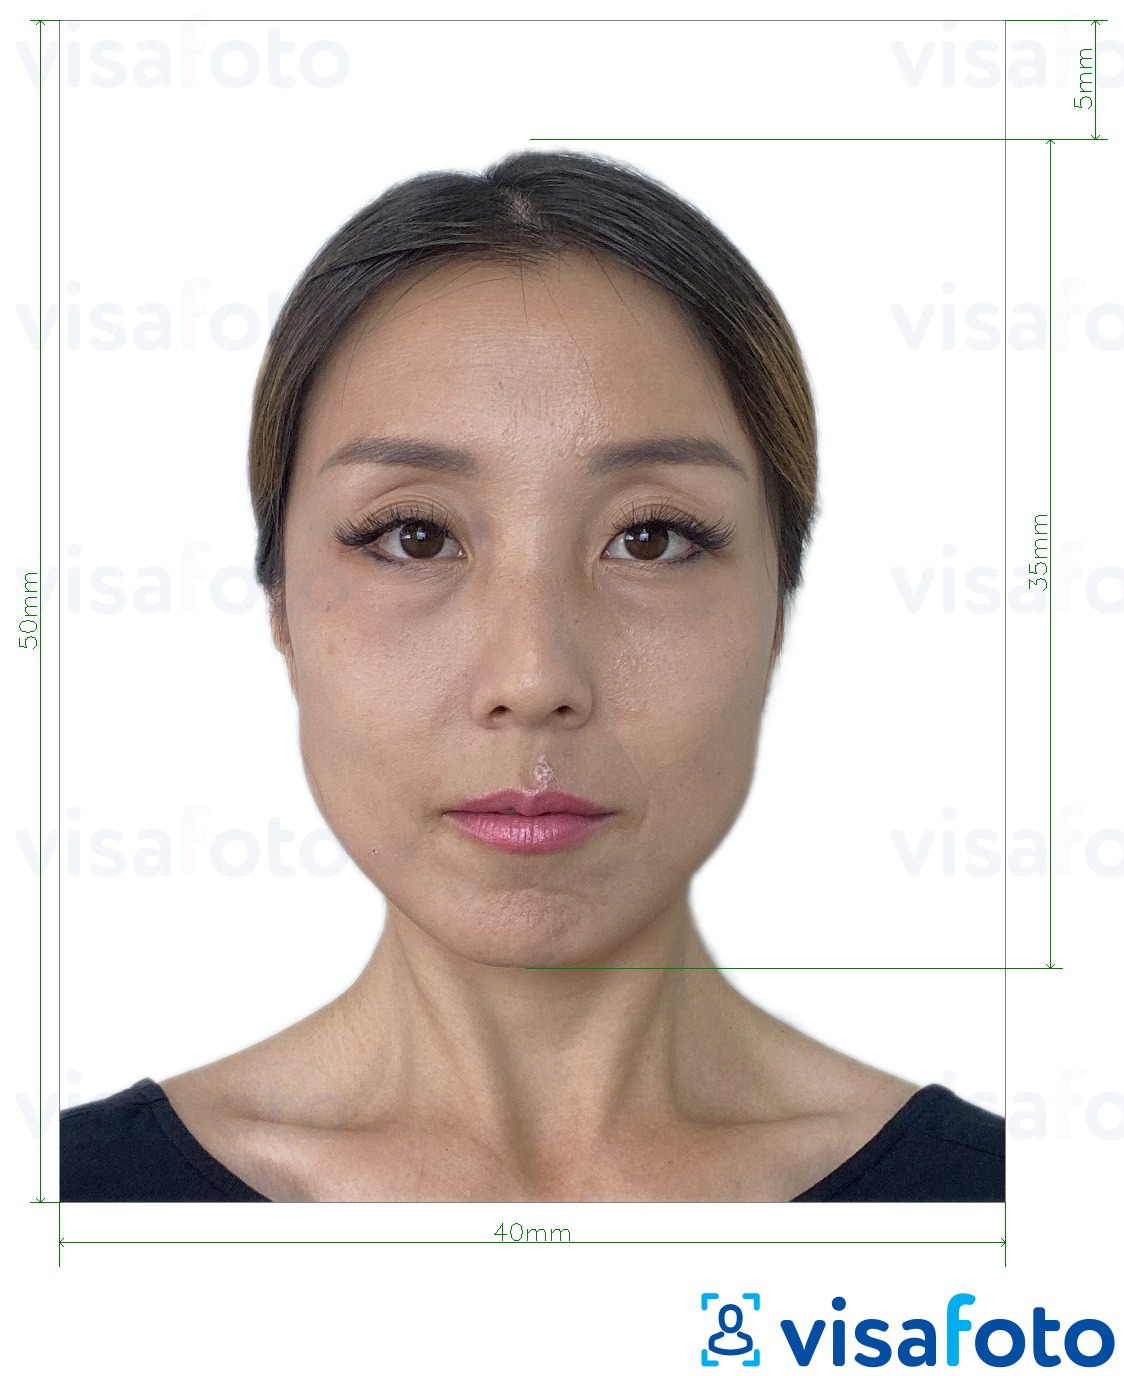 Ejemplo de foto para Pasaporte de Hong Kong 40x50 mm (4x5 cm) con la especificación del tamaño exacto